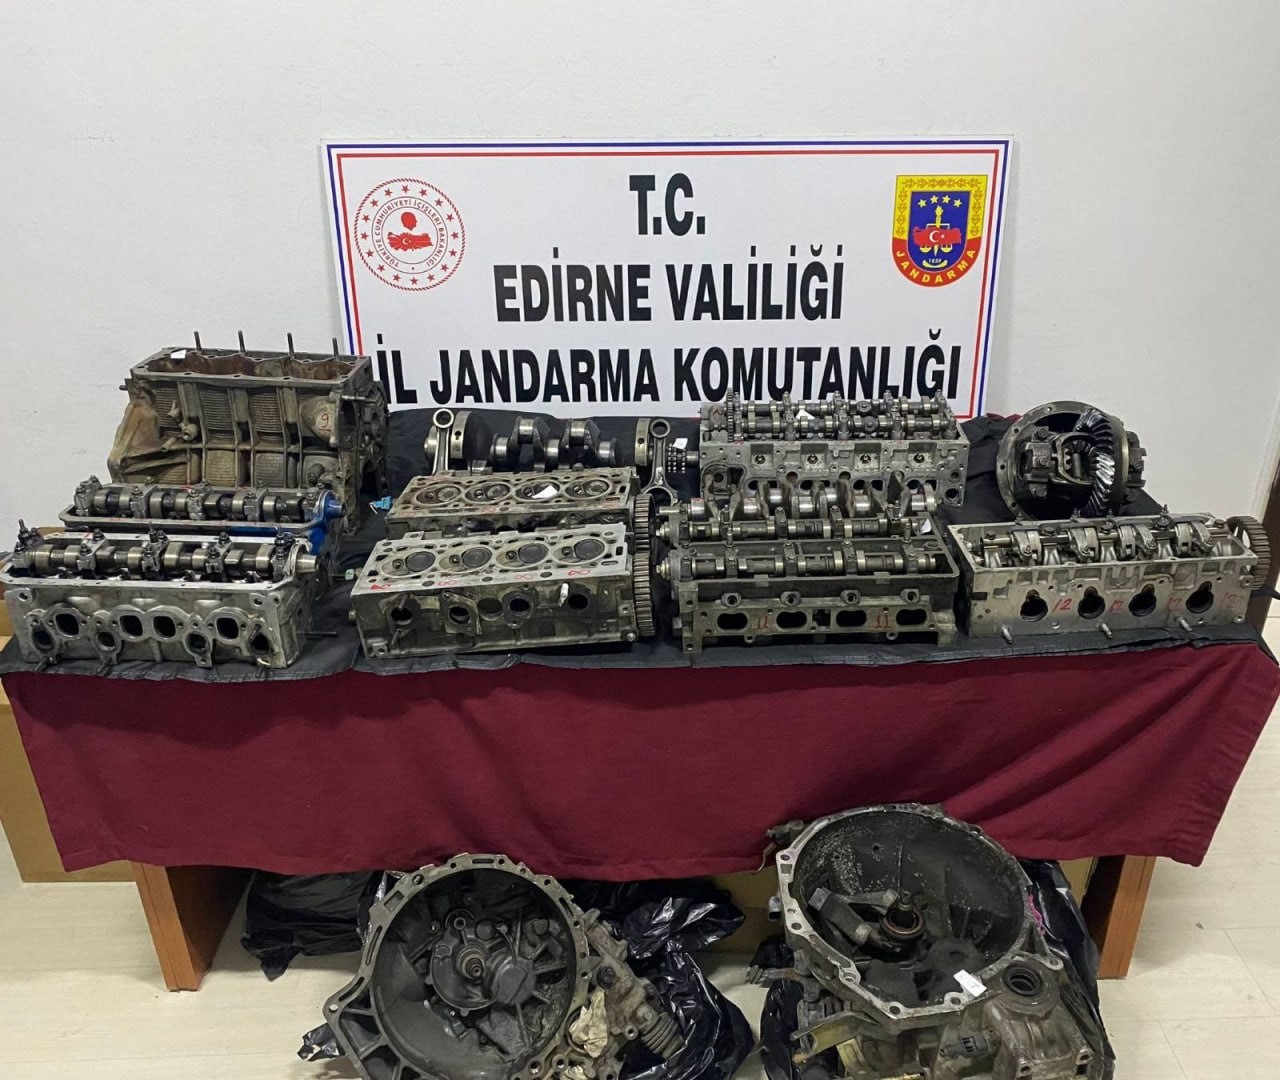 Edirne'de kaçakçılık operasyonu